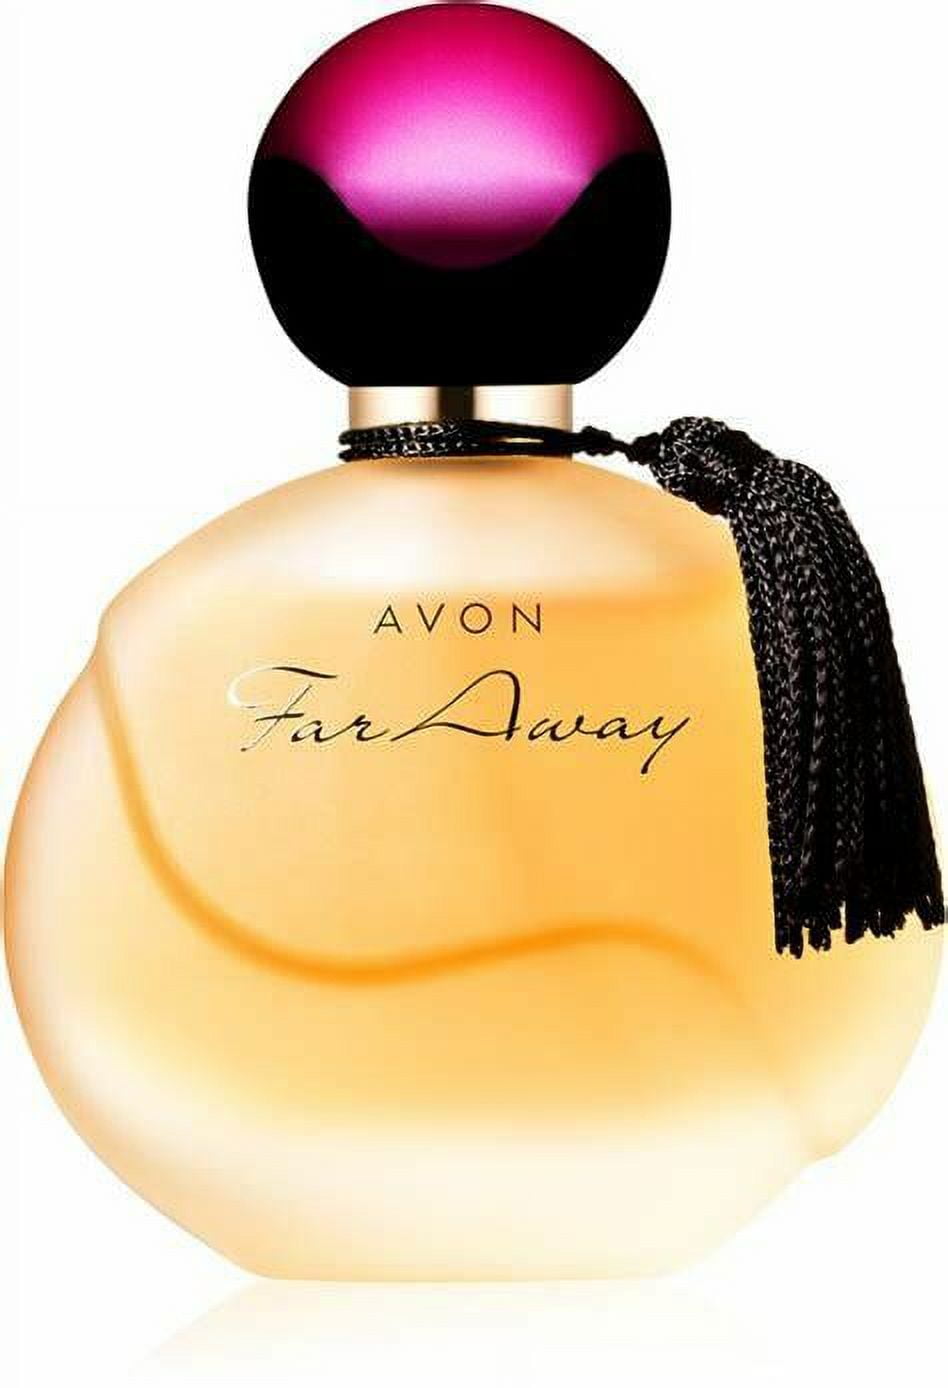 Avon FAR AWAY Eau de Parfum Spray Reviews 2024